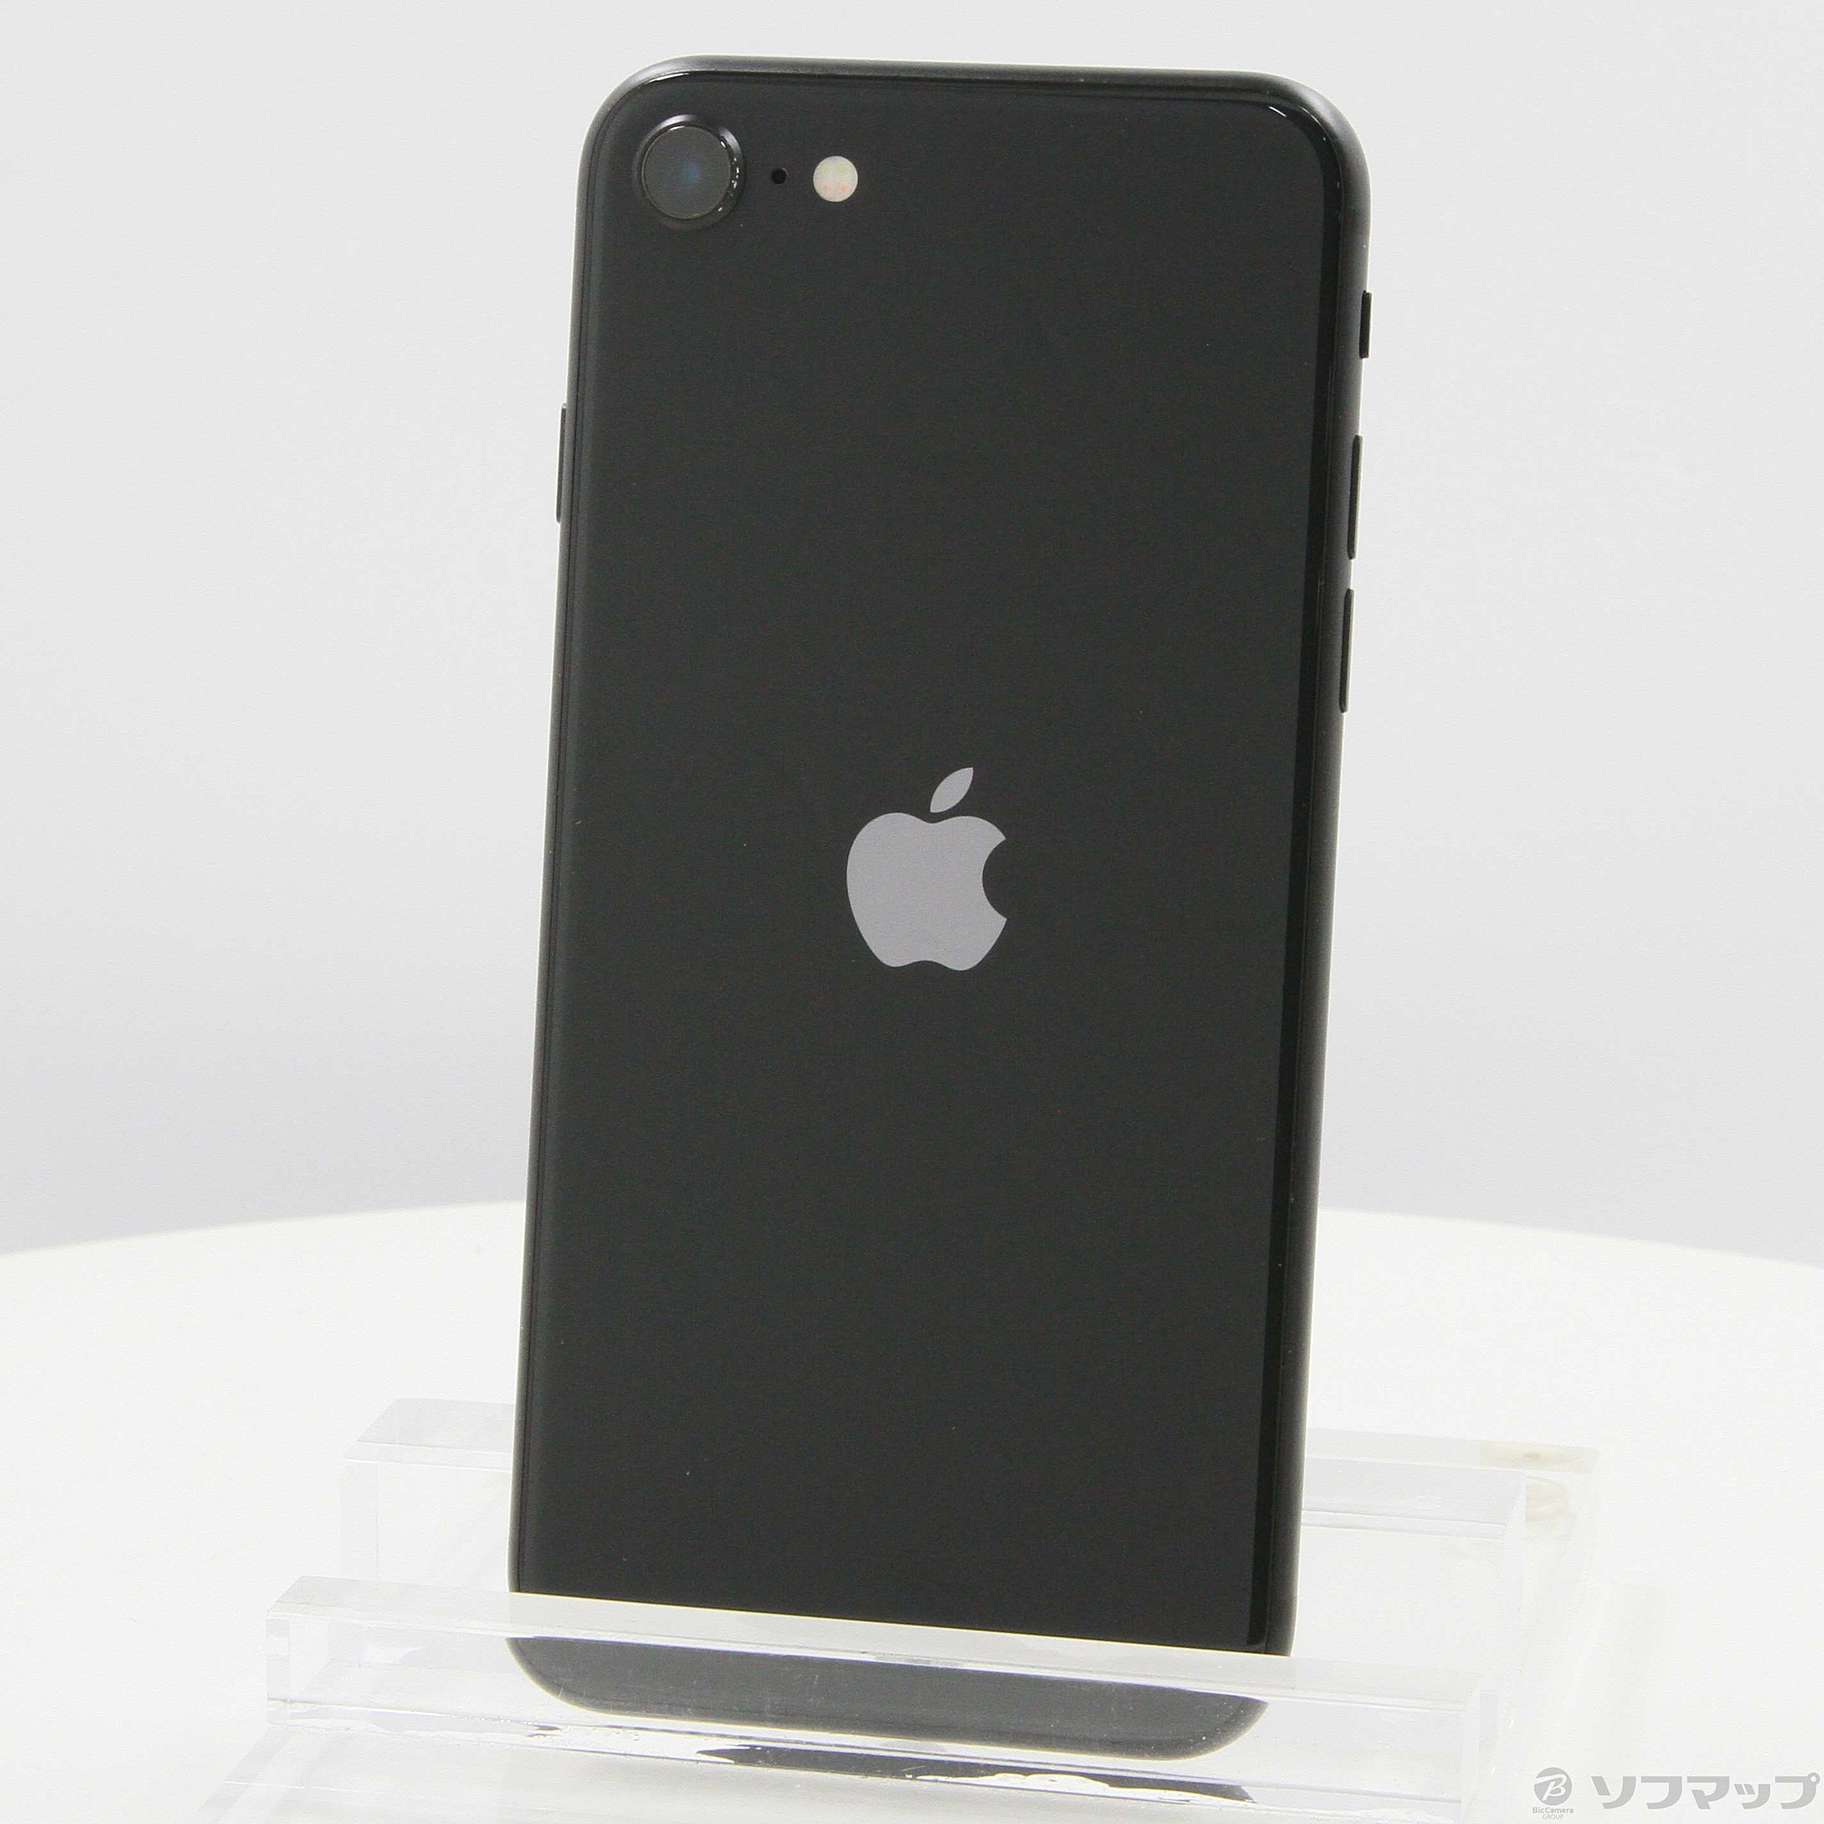 Apple アップル iPhone SE 第2世代 128GB 黒